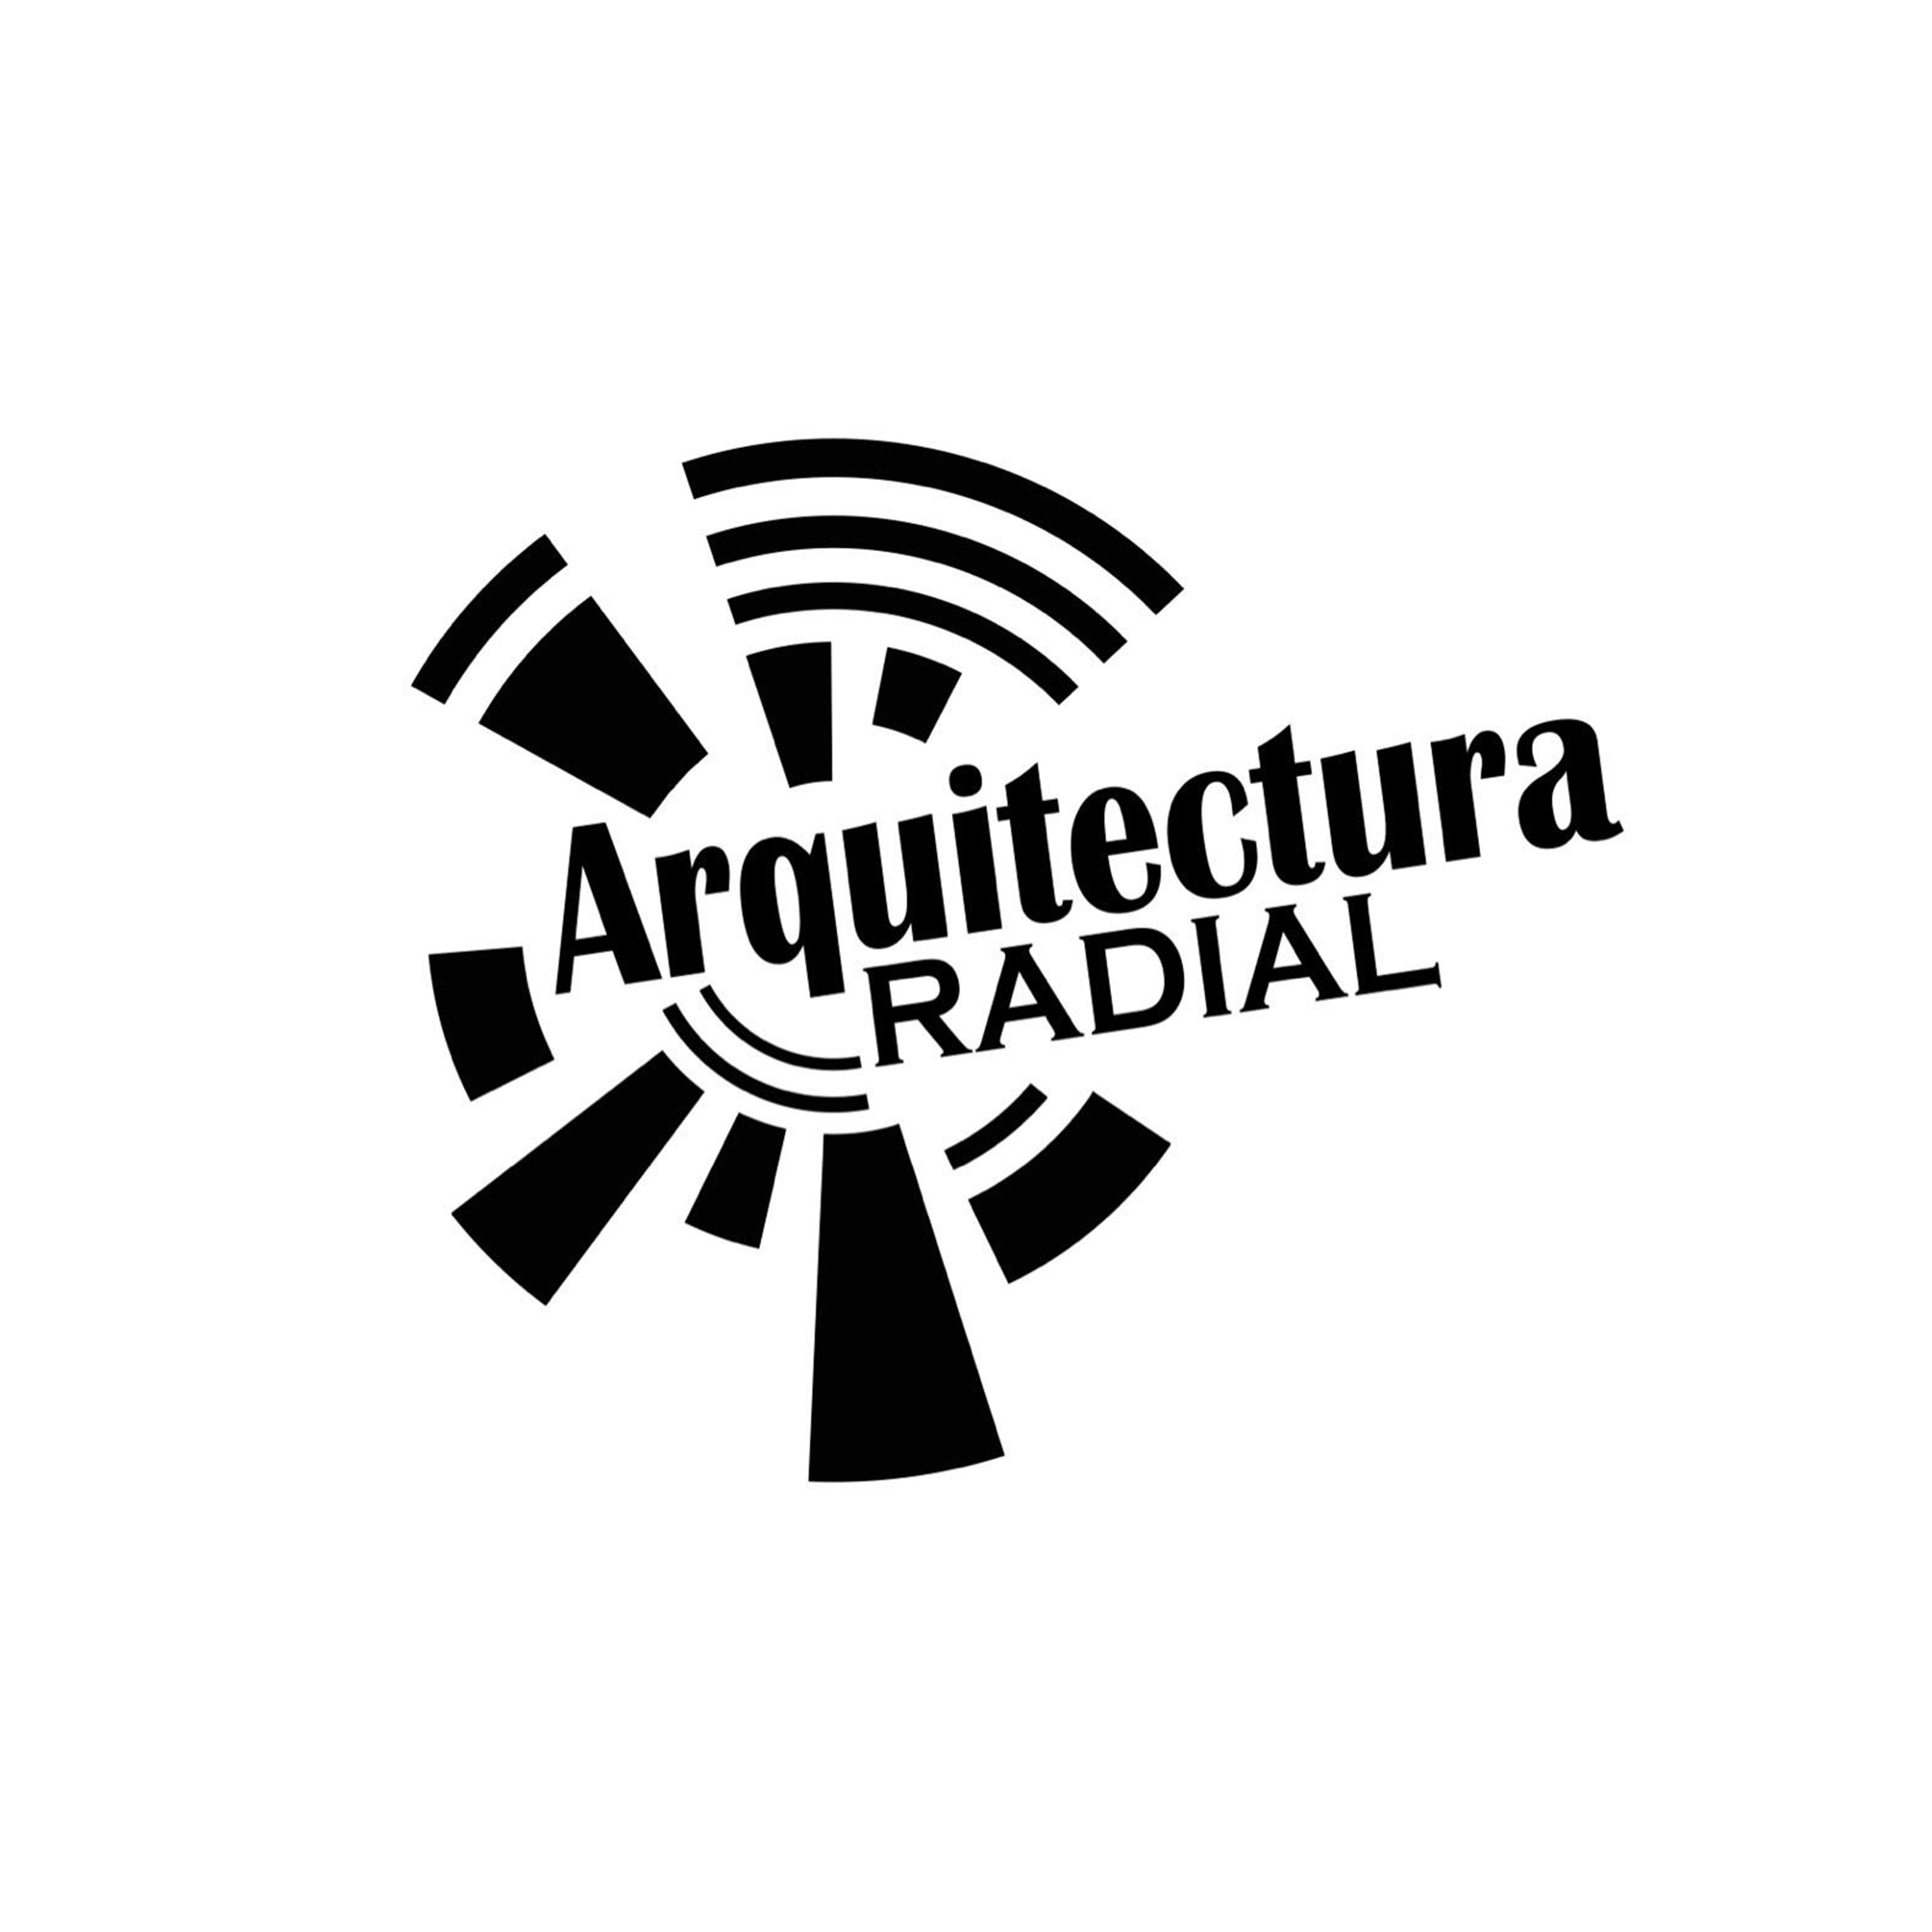 ARQUITECTURA RADIAL - DOMINGO MAYO 23 2021